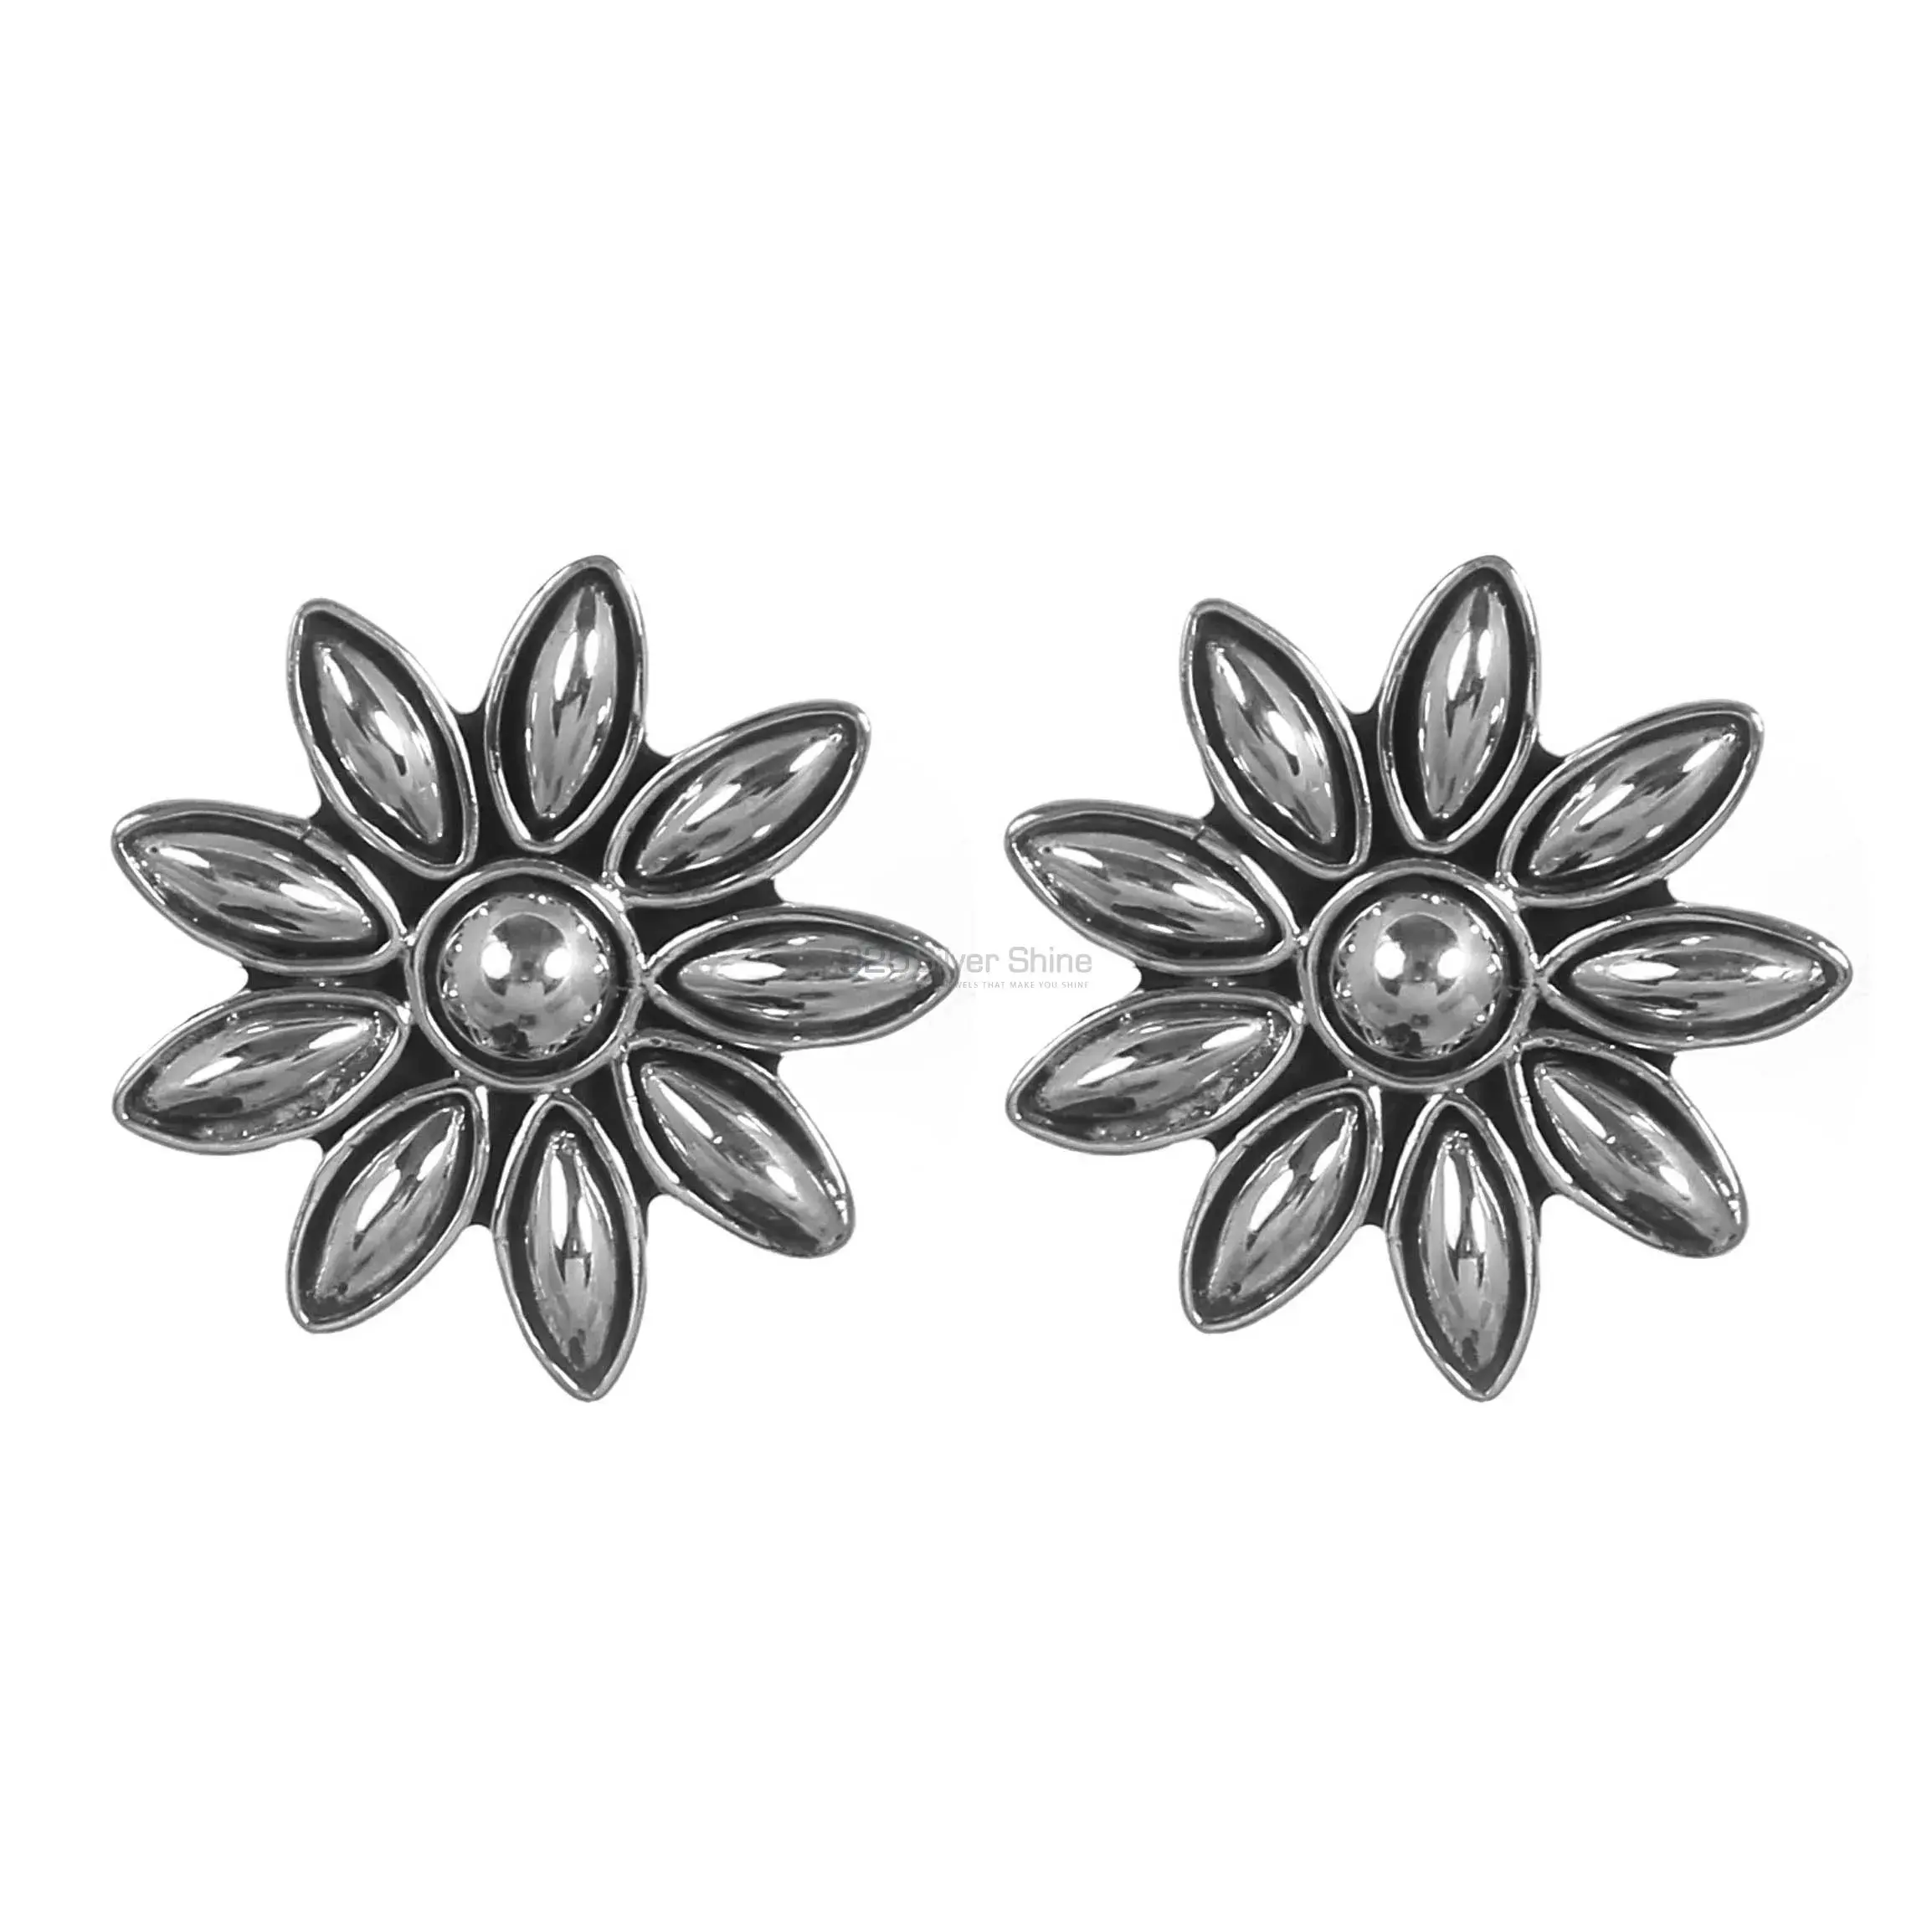 Star Design Handmade Earrings In 925 Sterling Silver 925SE310